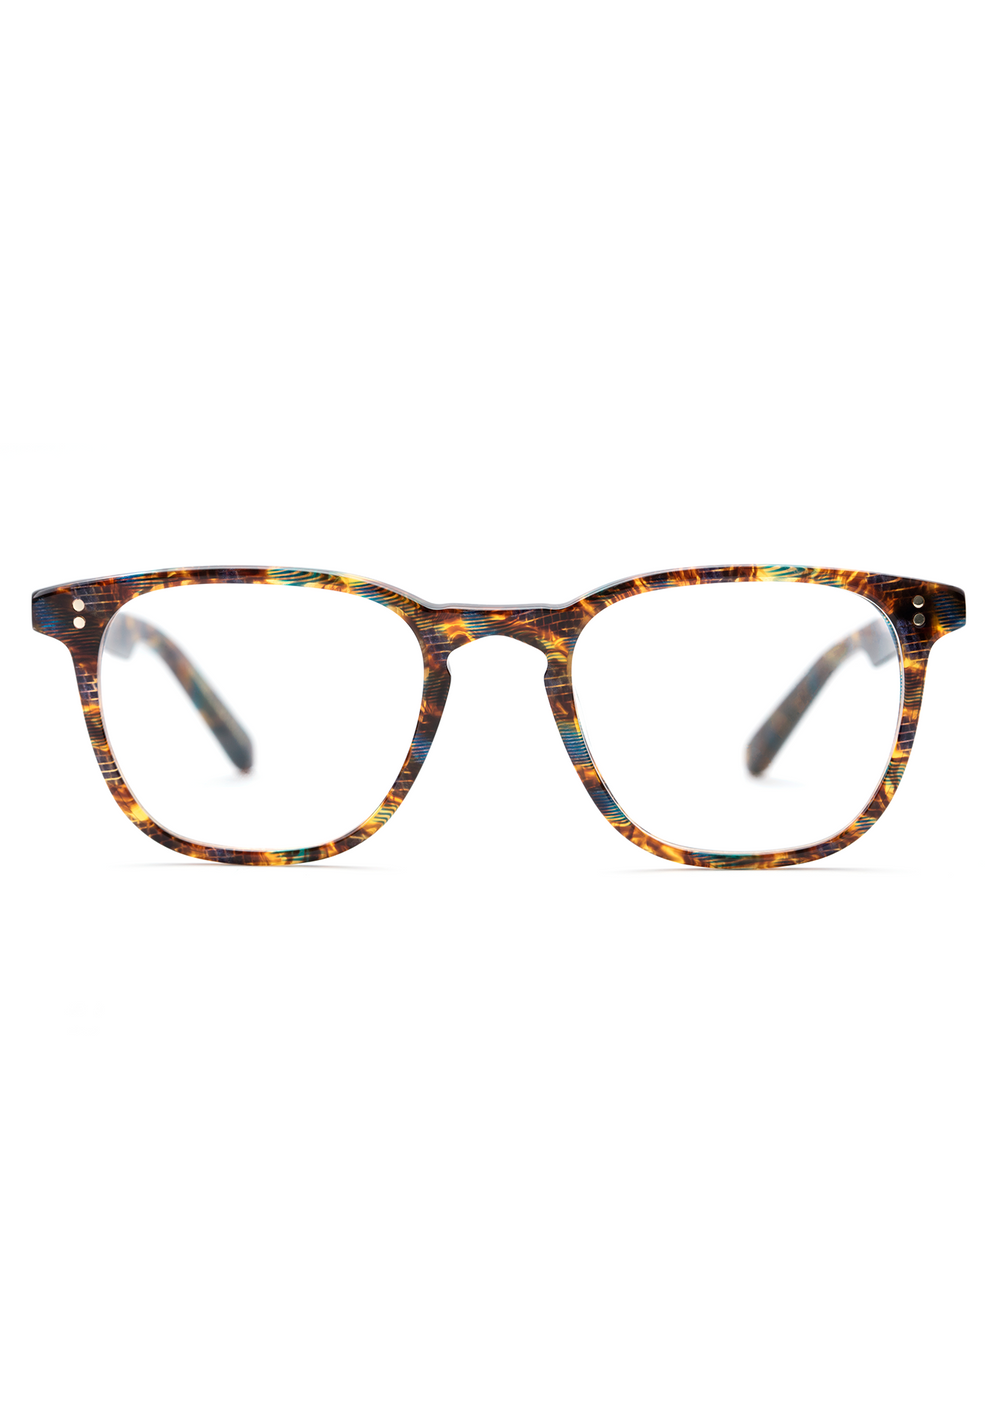 KREWE - STATE | Heron Handcrafted, Luxury Brown Acetate Eyeglasses